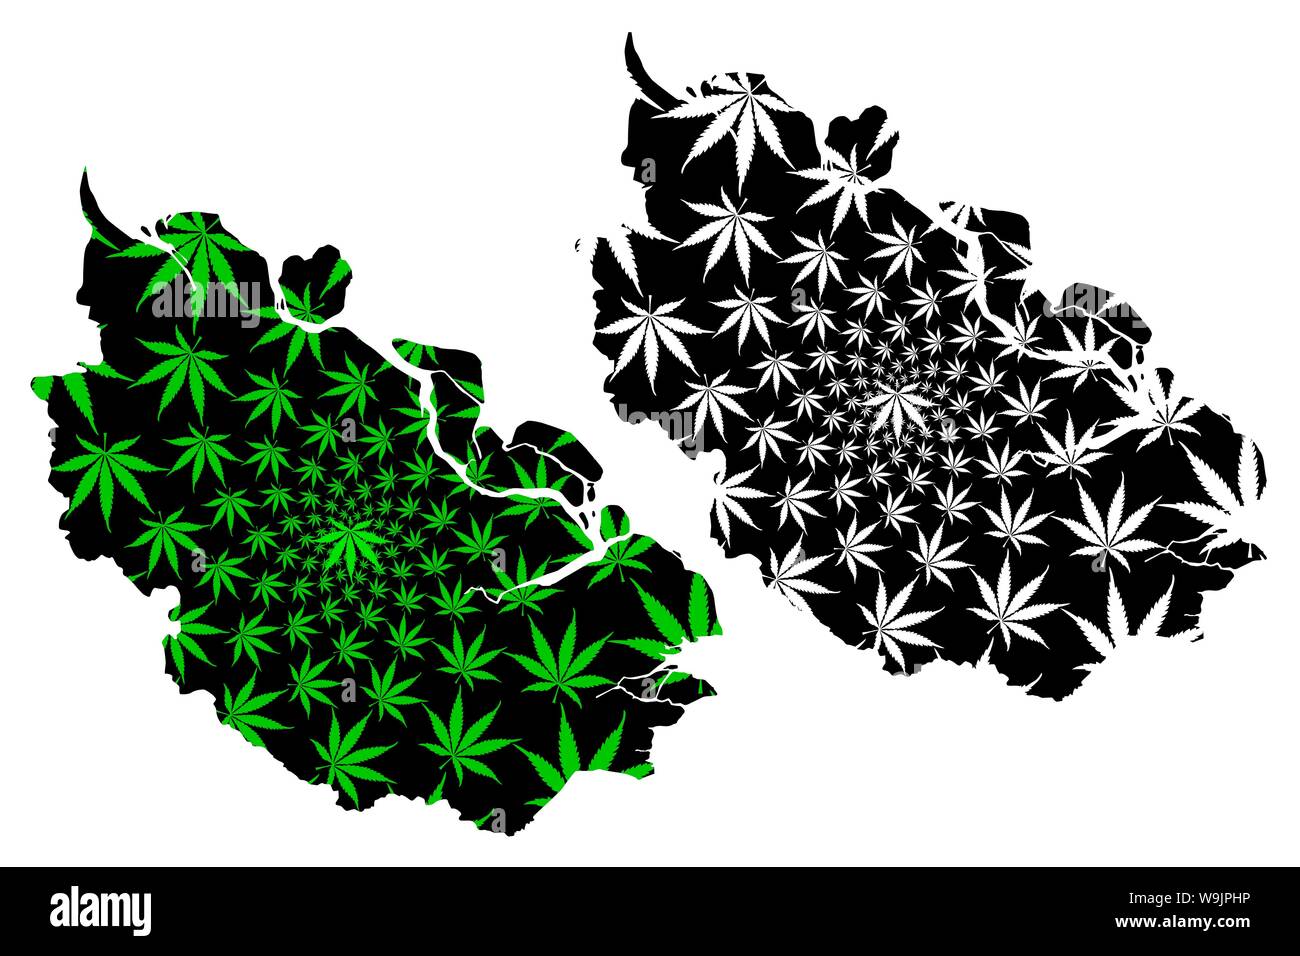 Riau (Unterteilungen von Indonesien, Provinzen Indonesiens) Karte ist Cannabis blatt grün und schwarz gestaltet, Riau Karte aus Marihuana (Marihuana, THC) fol Stock Vektor